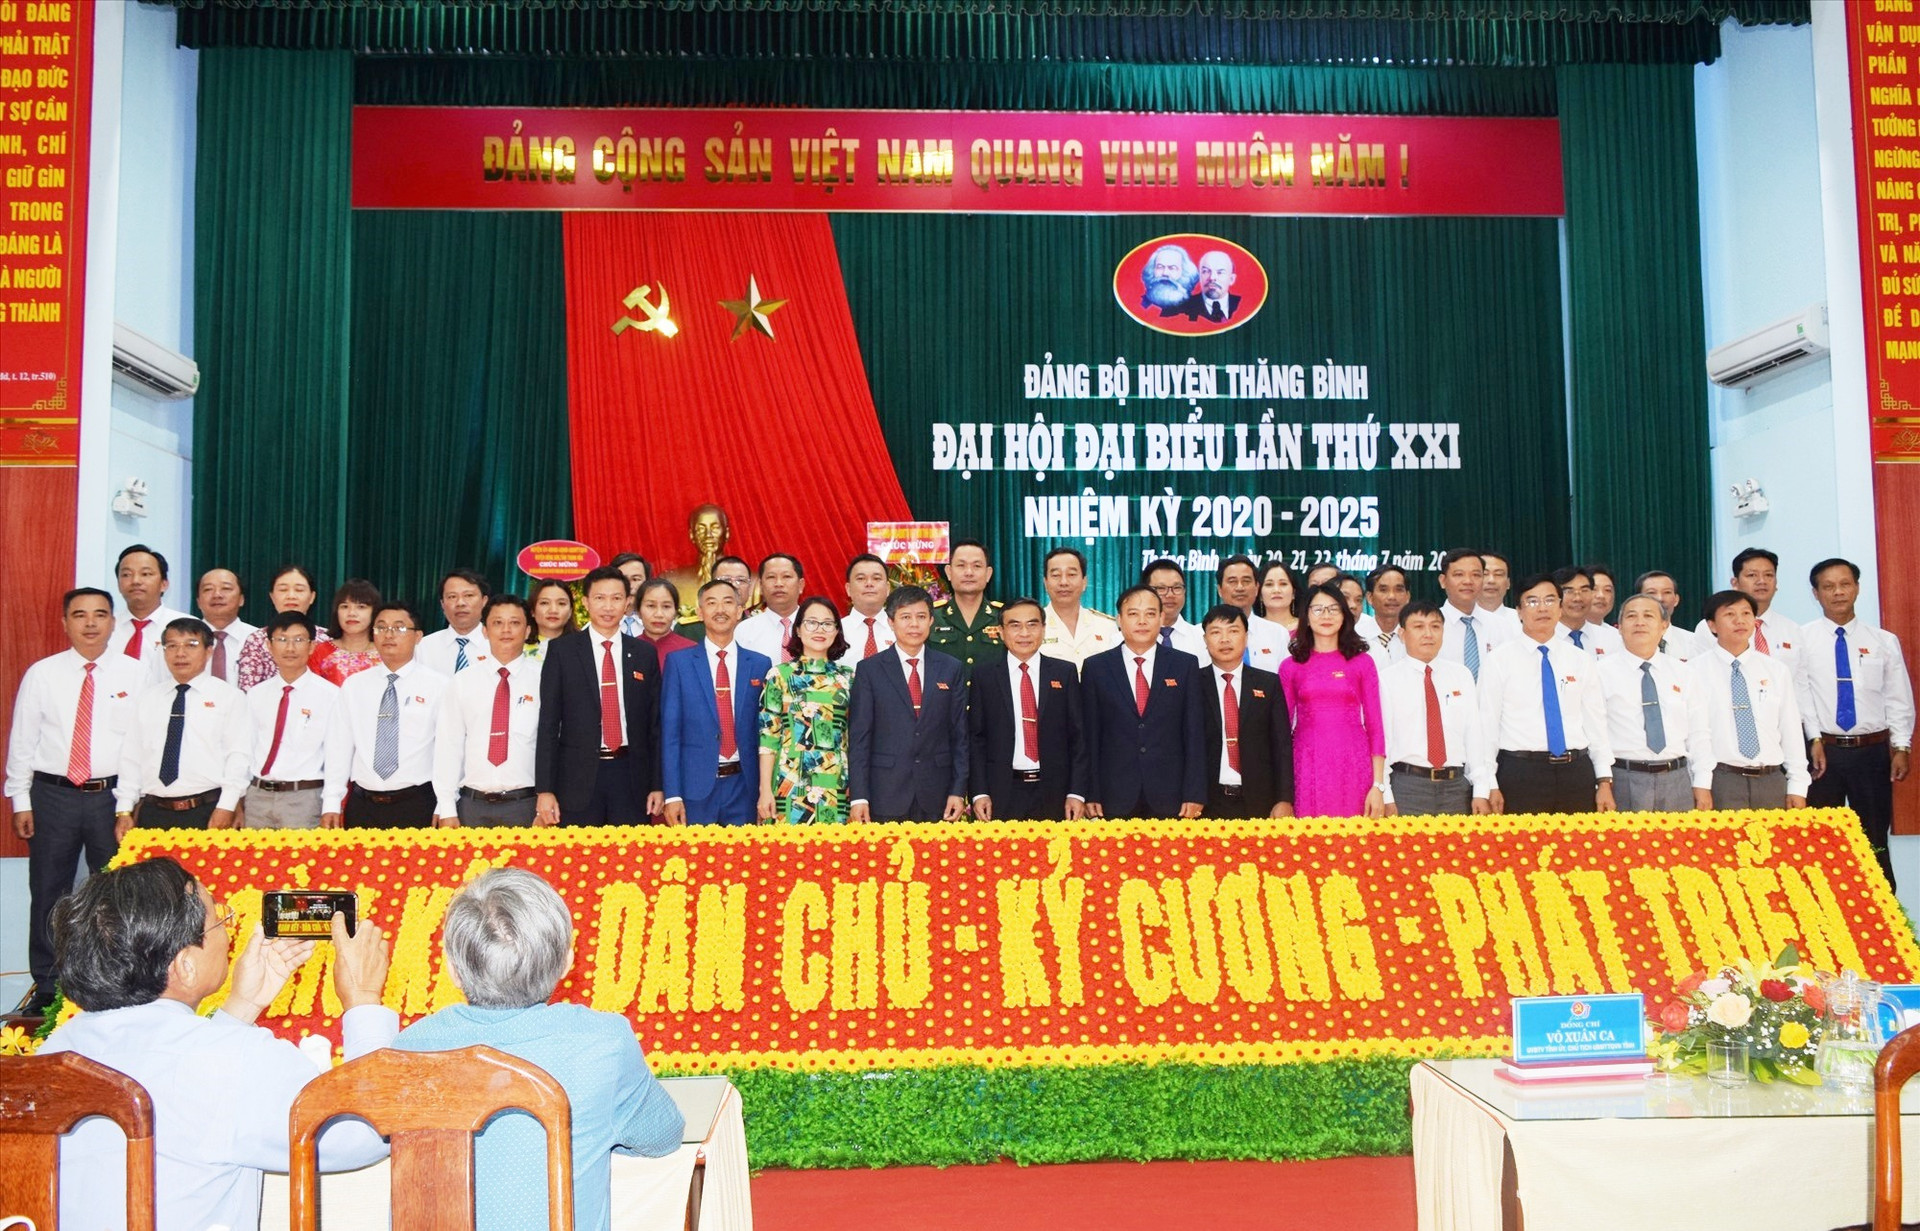 Ban chấp hành Đảng bộ huyện Thăng Bình lần thứ XXI ra mắt đại hội. Ảnh: V.N